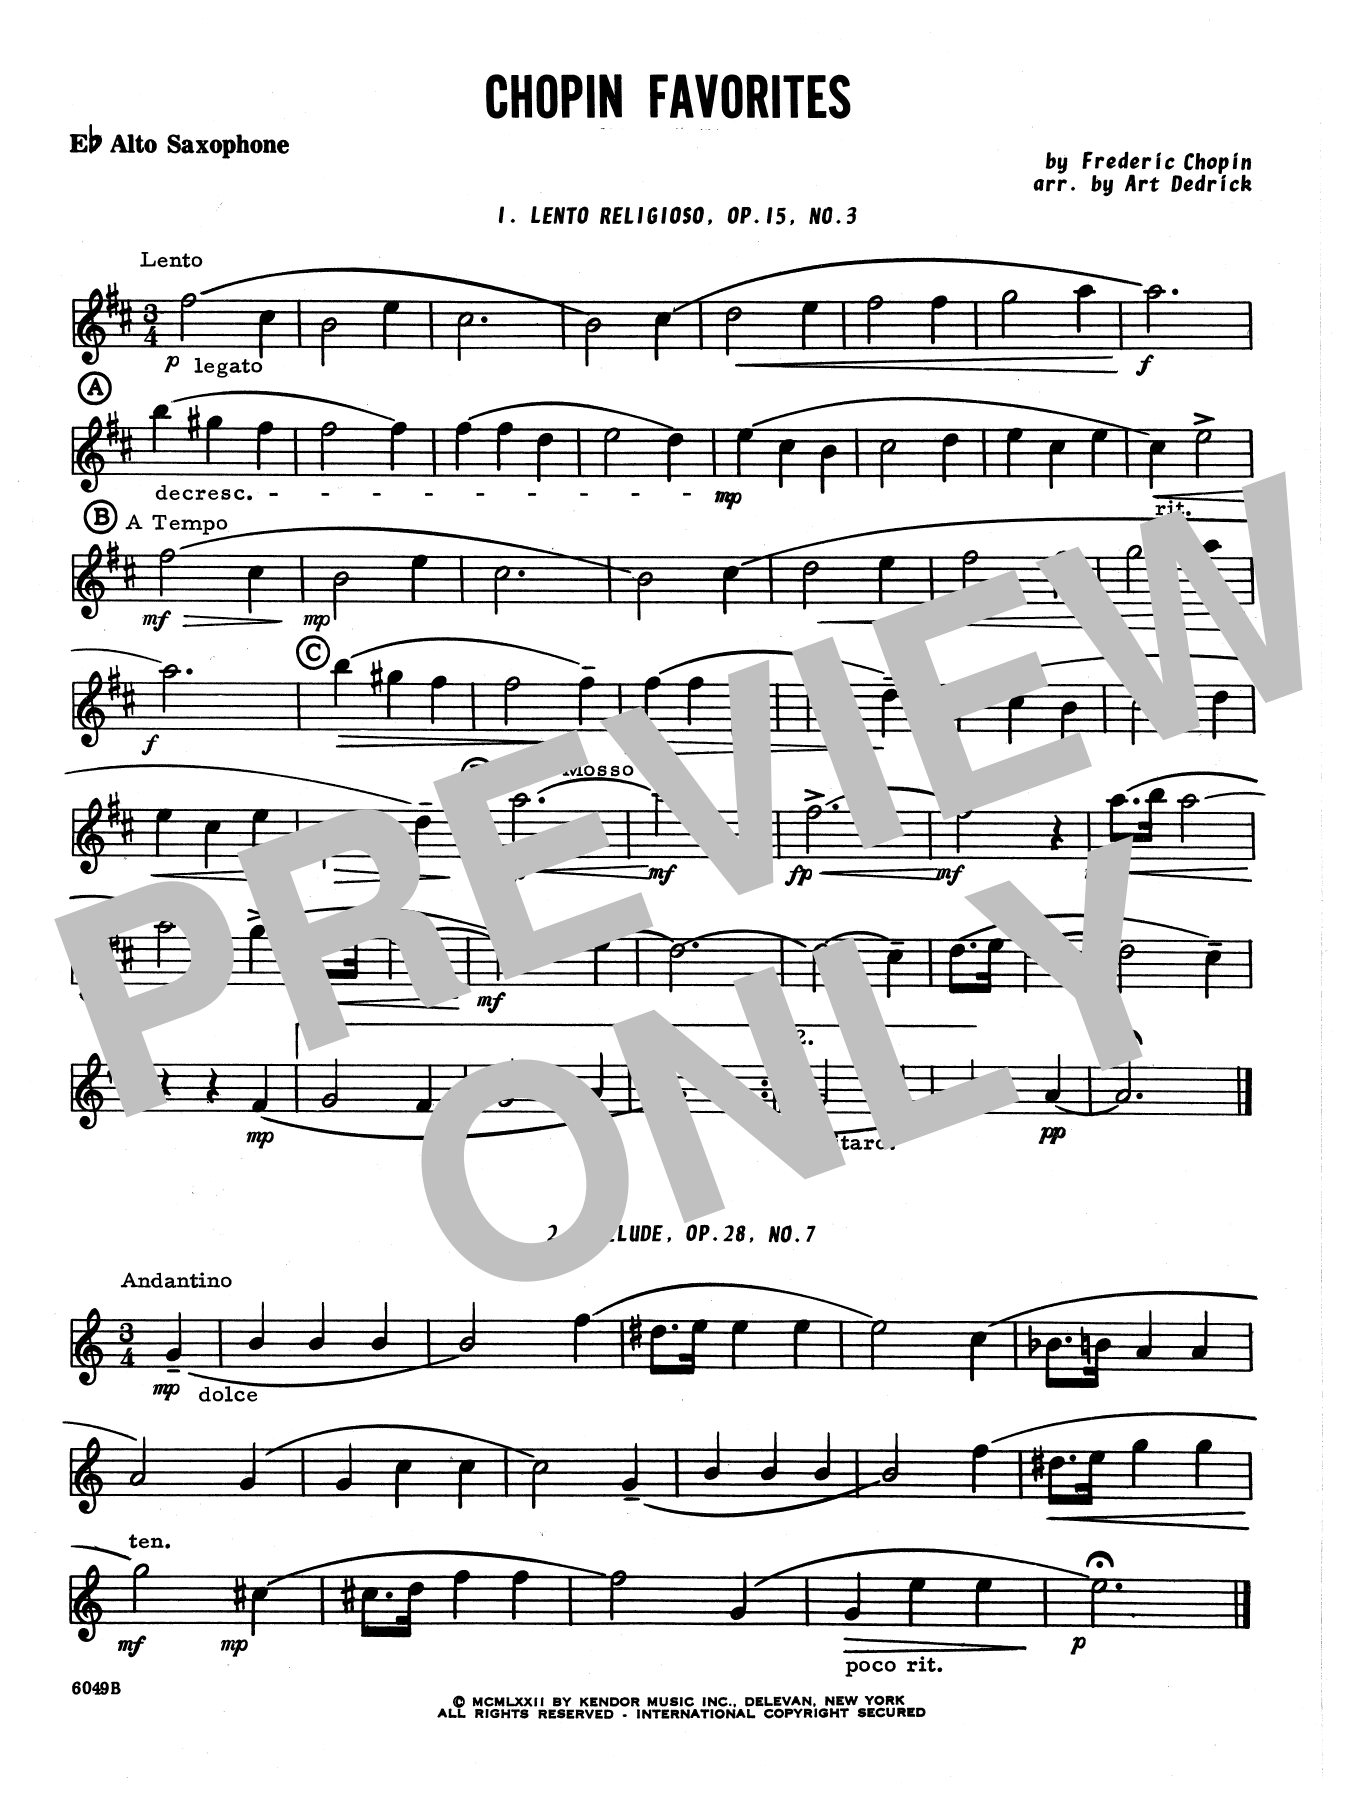 Download Art Dedrick Chopin Favorites - Eb Alto Saxophone Sheet Music